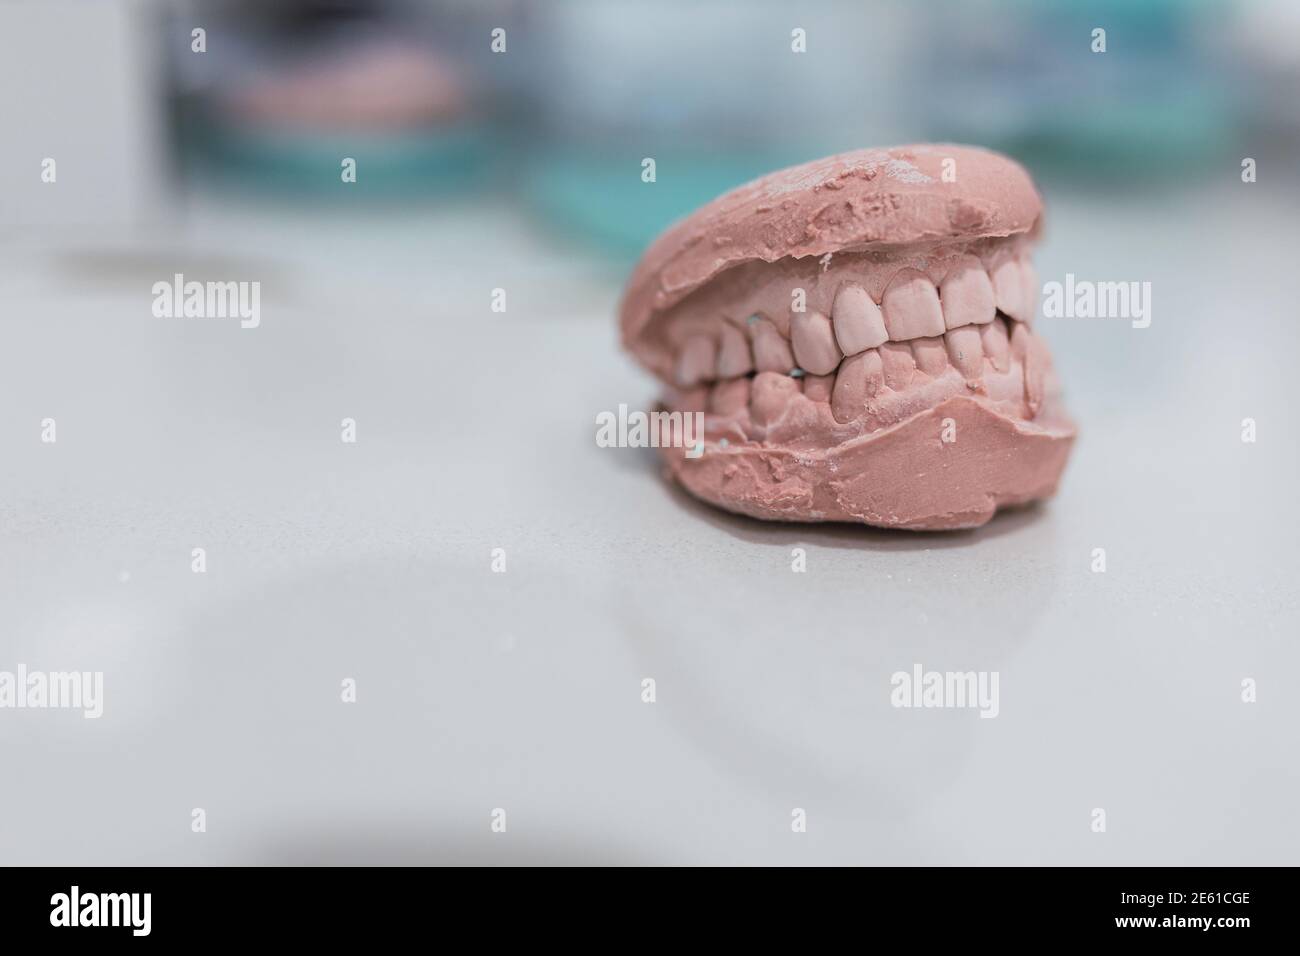 Moulage dentaire modèle de gypse plâtre moulé stomatologic humain mâchoires prothétique laboratoire, technique shots.dental concept de santé. Banque D'Images